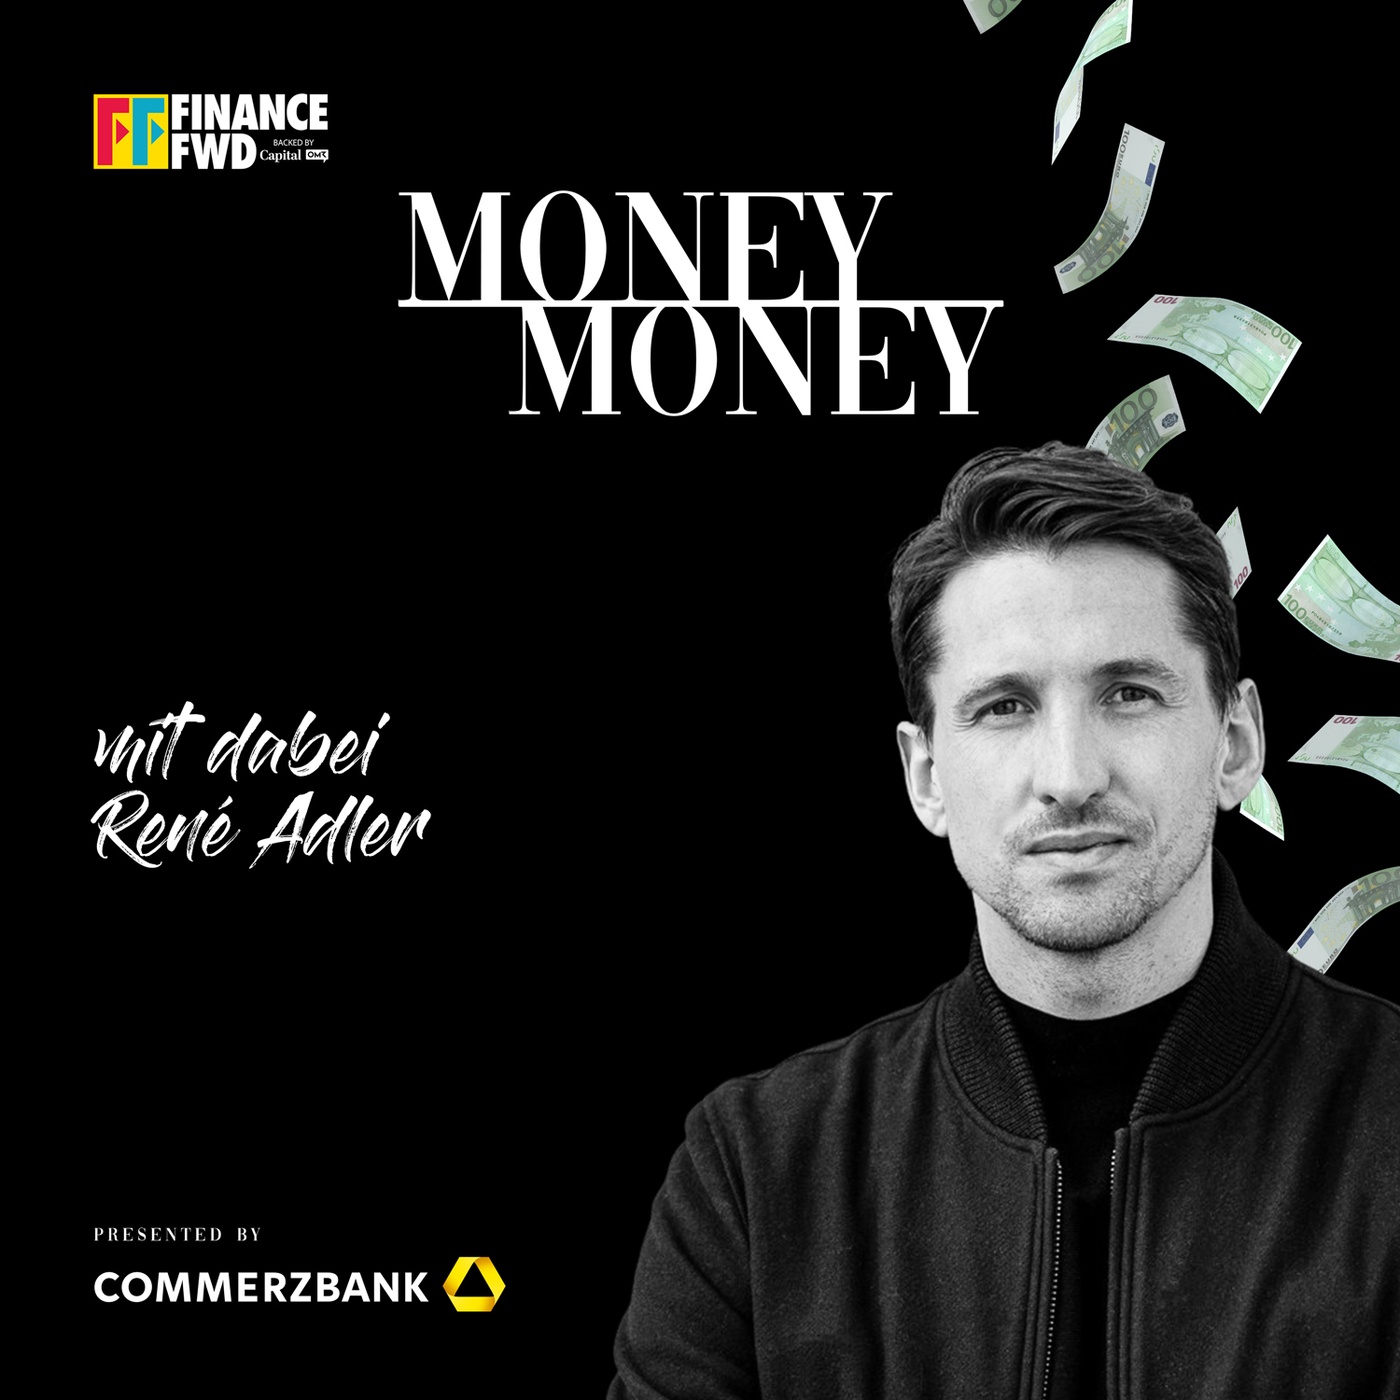 #11 René Adler – In die Verlängerung als Startup-Investor